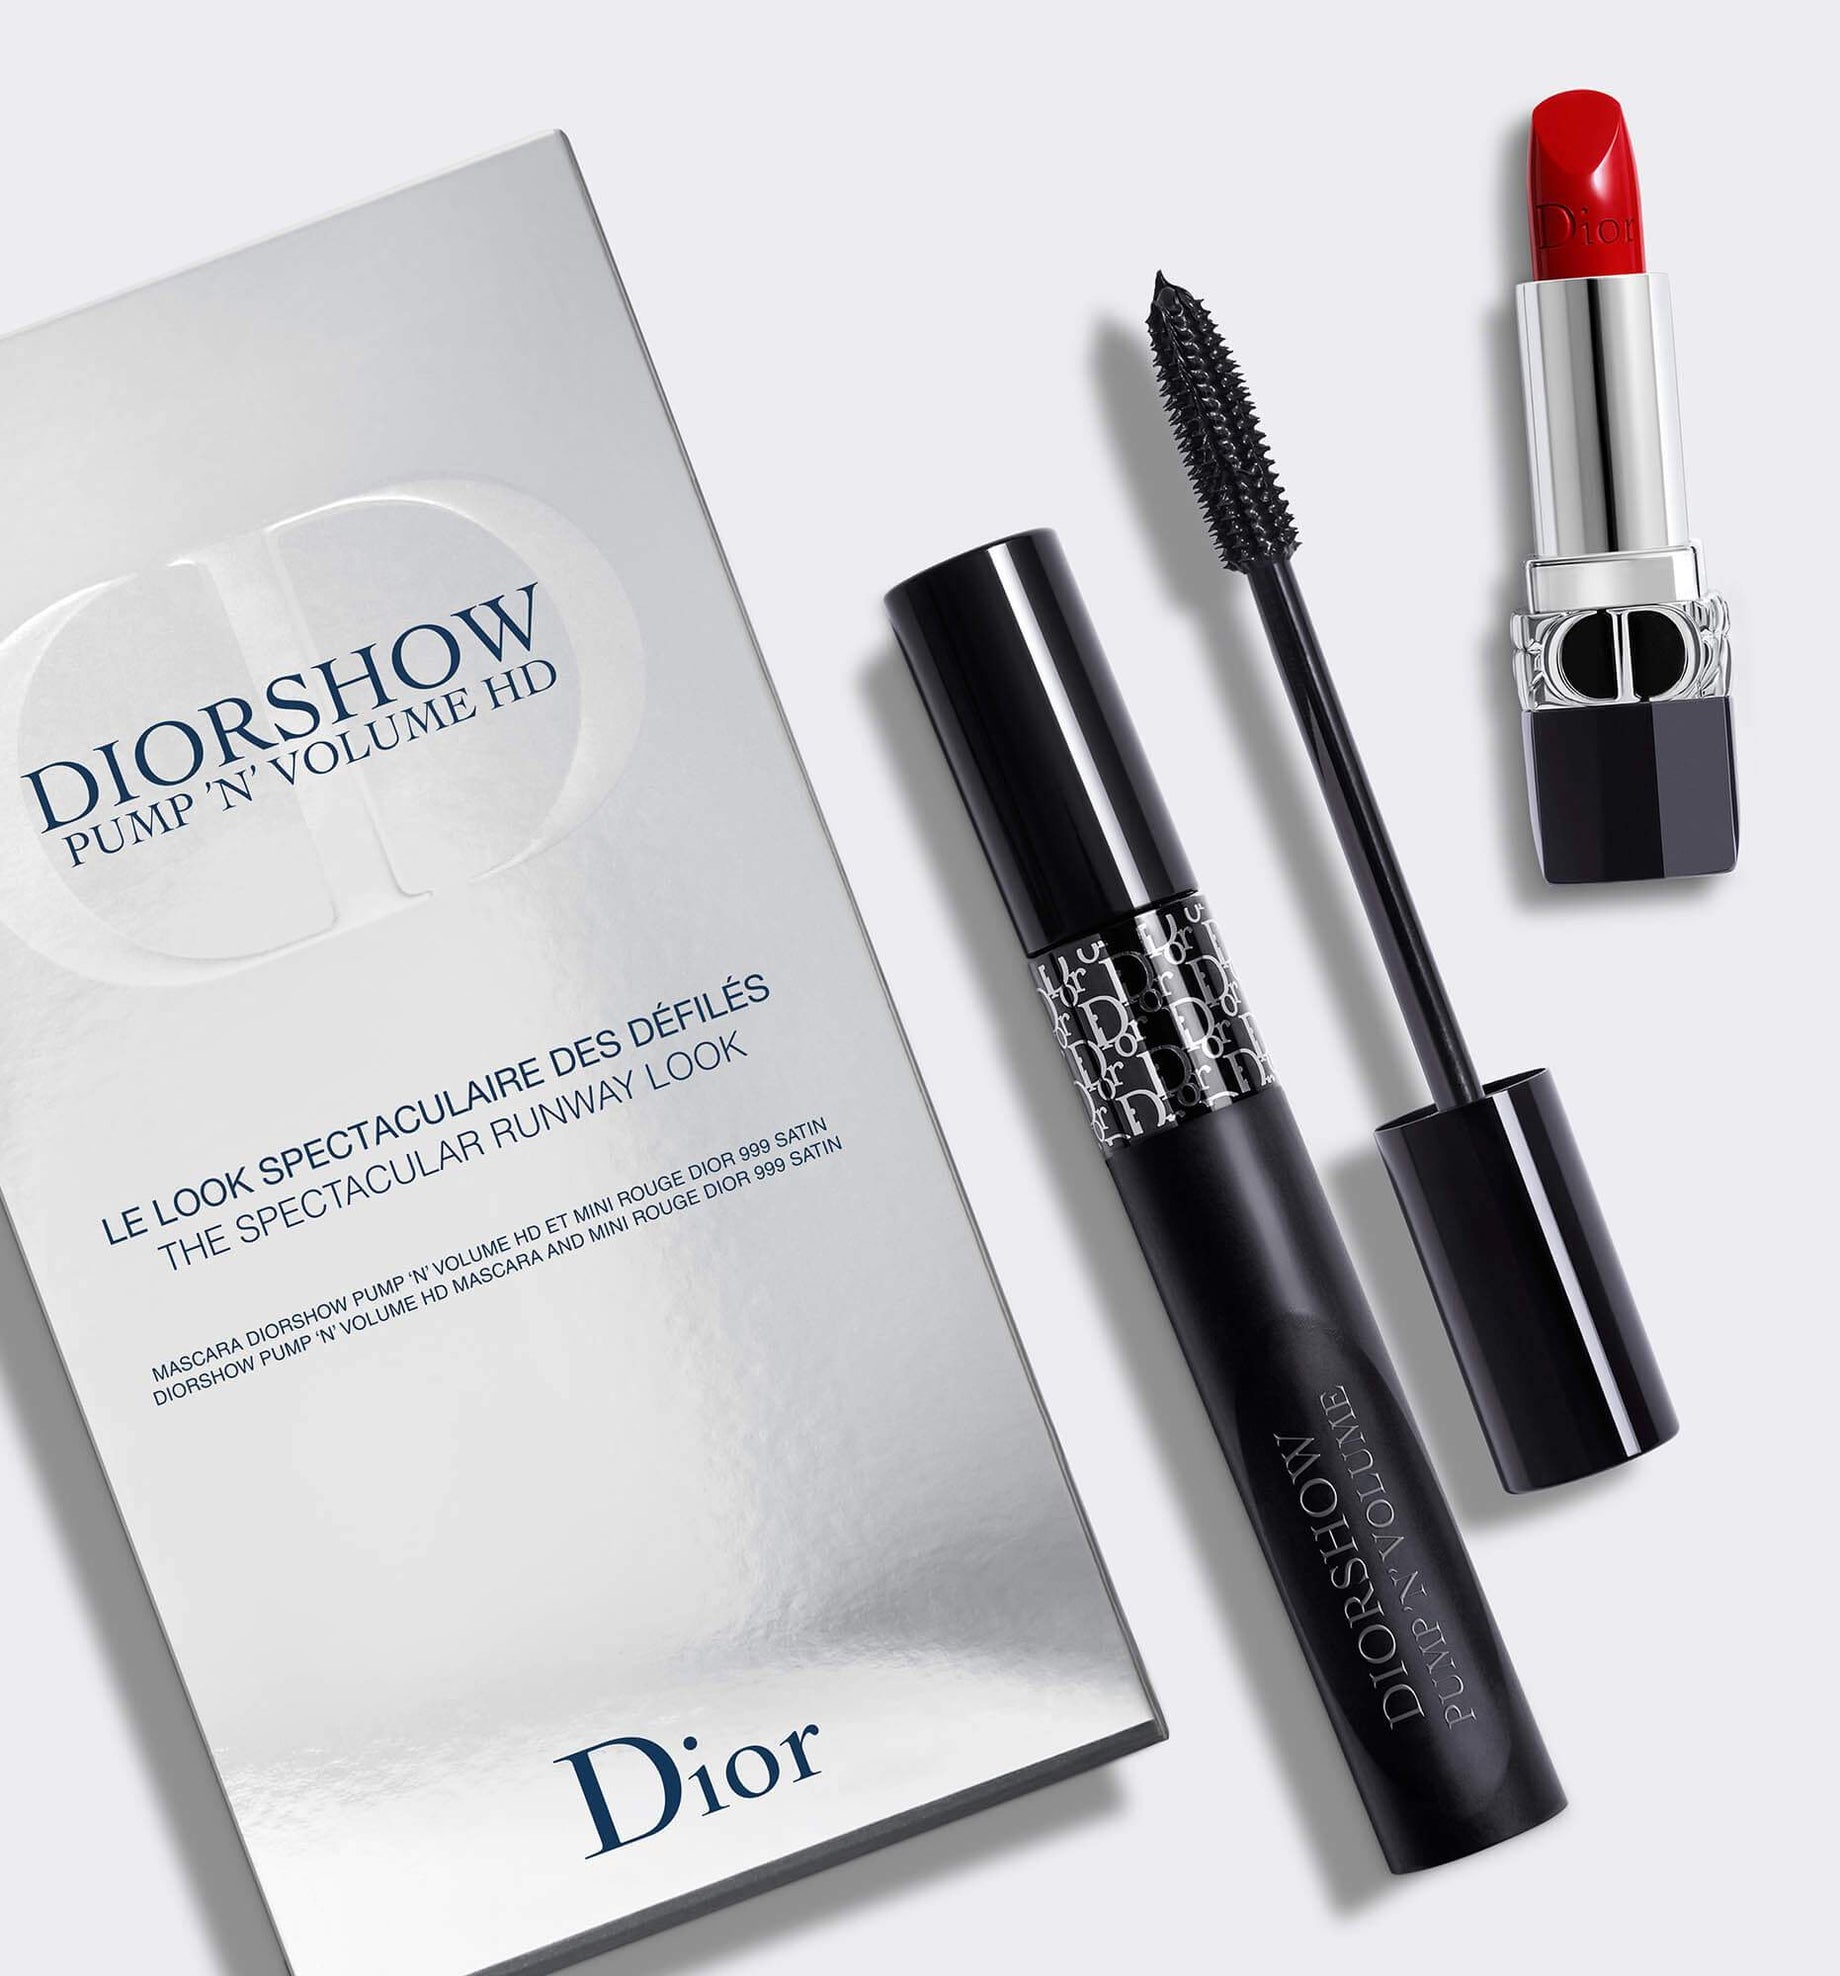 Christian Dior Diorshow Pump N Volume HD Mascara   090 Black Plump   Stylemyle